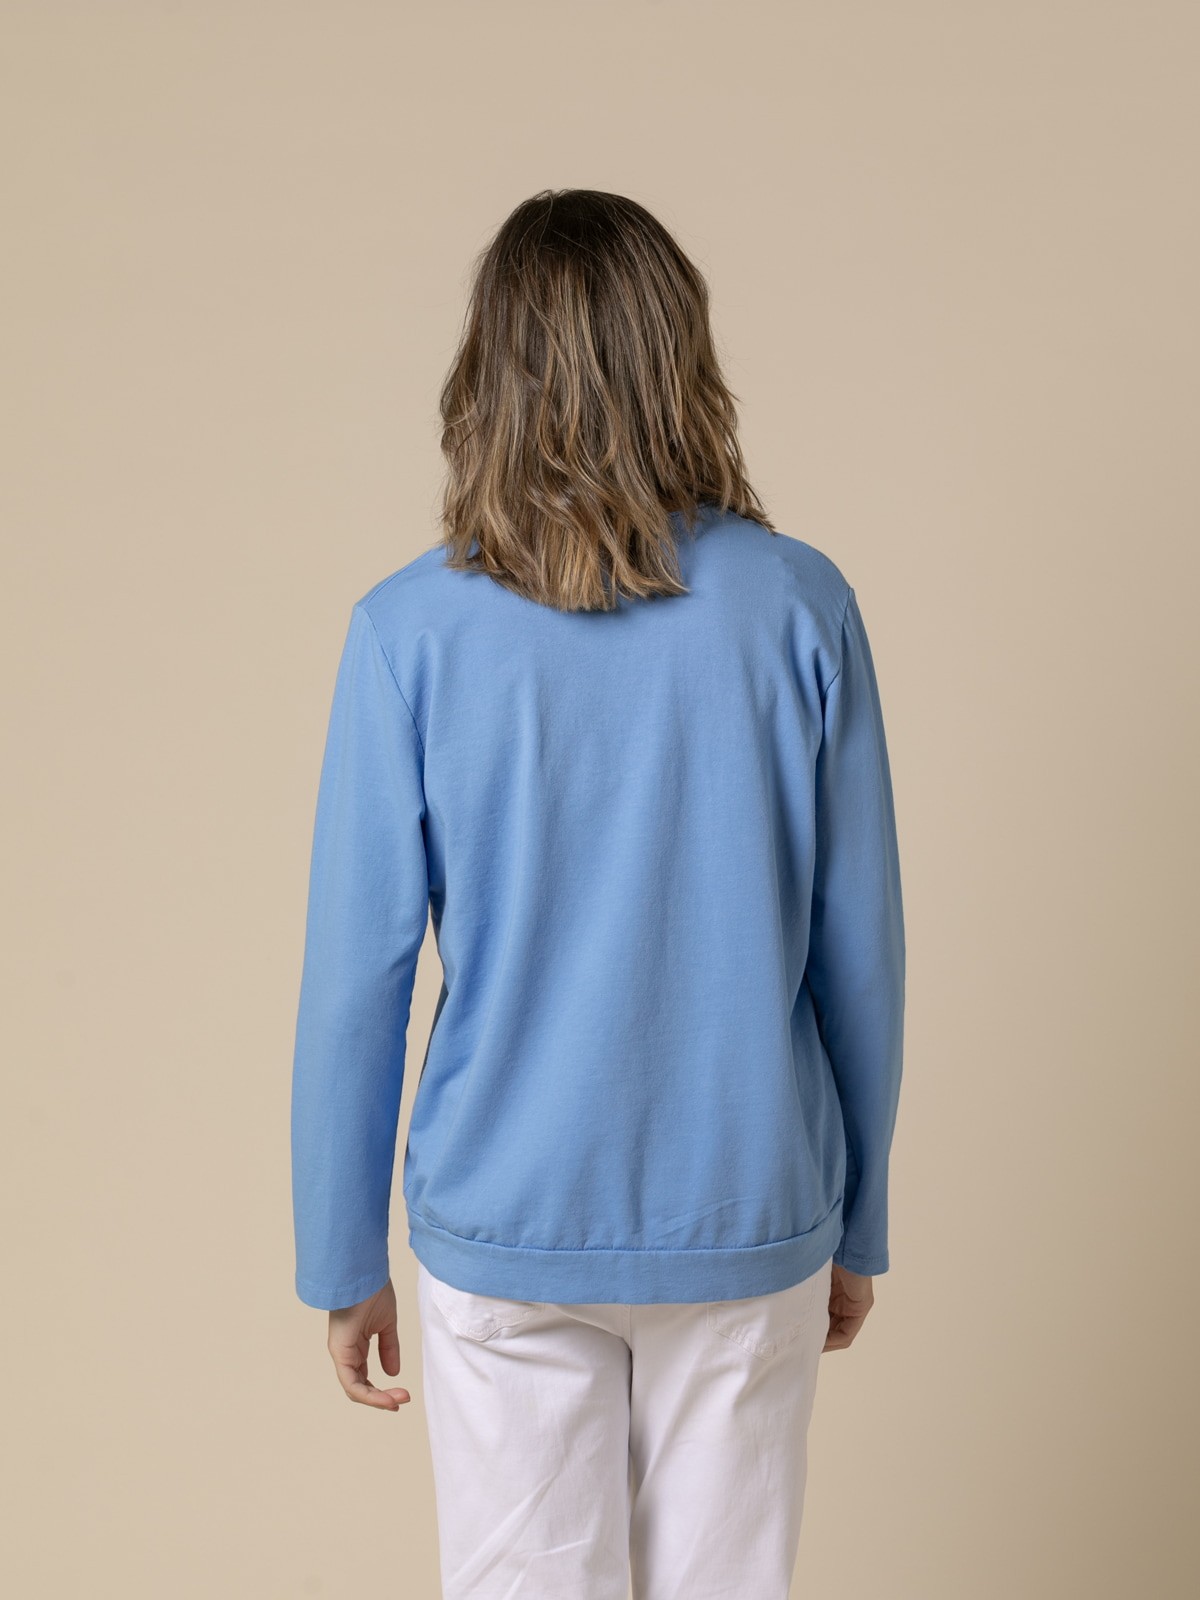 Woman 100% casual cotton plain sweater  Bluecolour